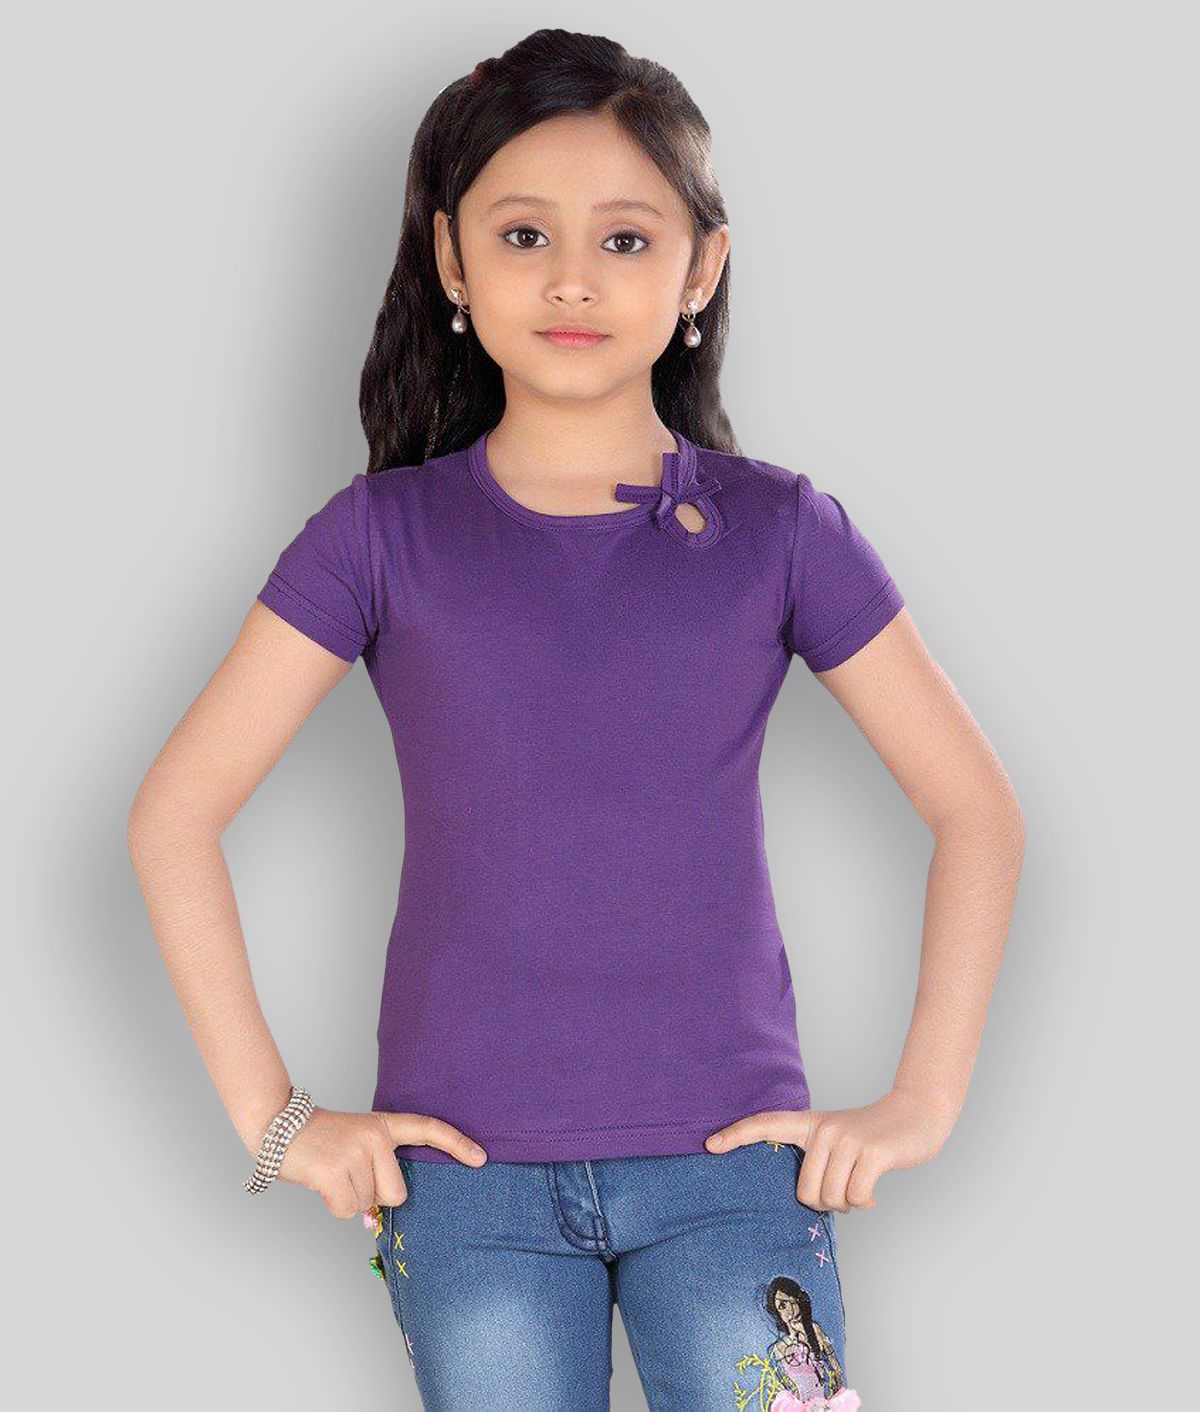     			Sini Mini - Purple Cotton Girl's T-Shirt ( Pack of 1 )